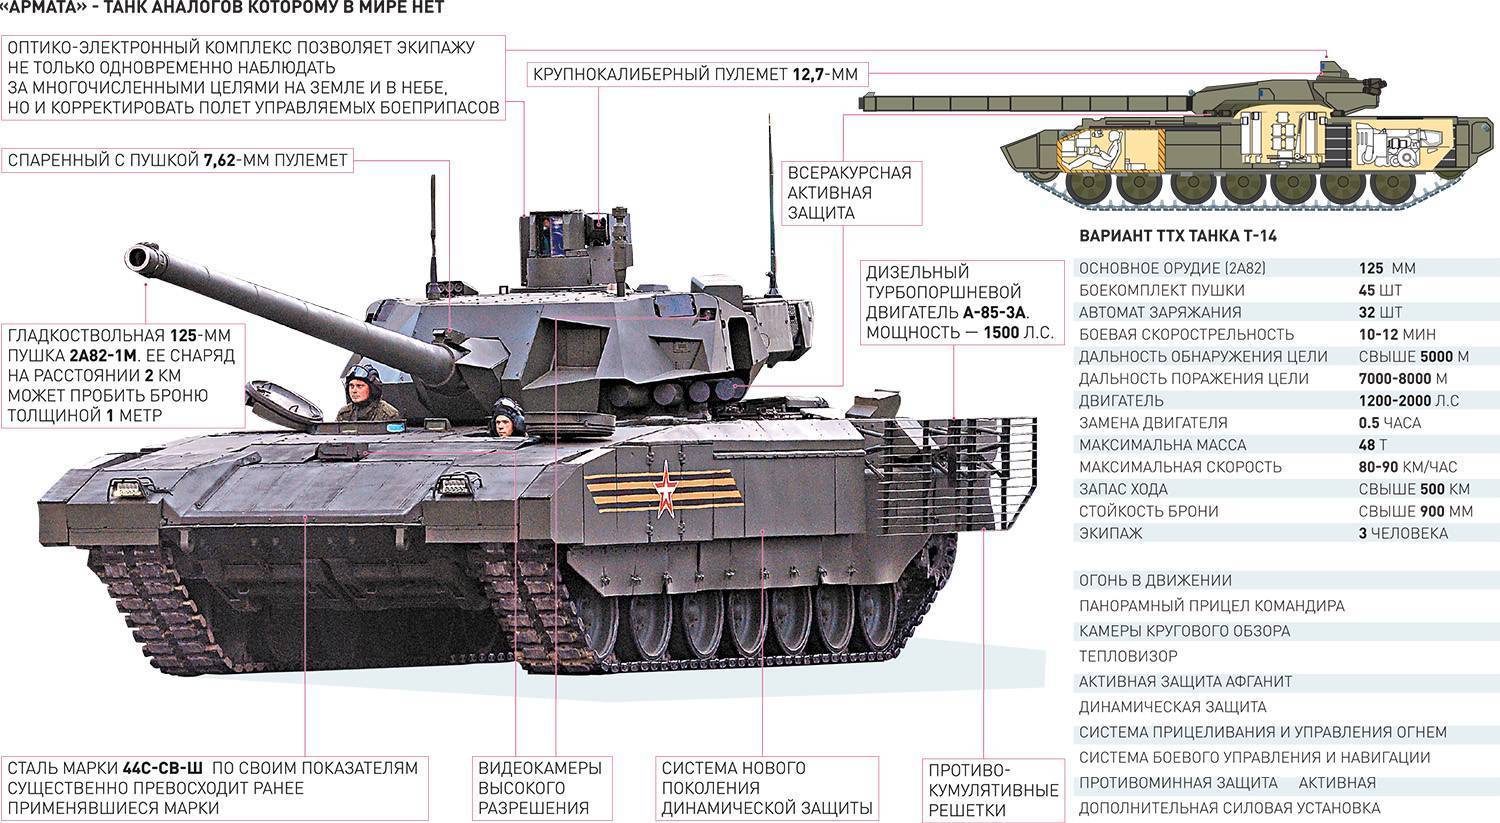 Танк т-14 «армата»: обзор и технические характеристики